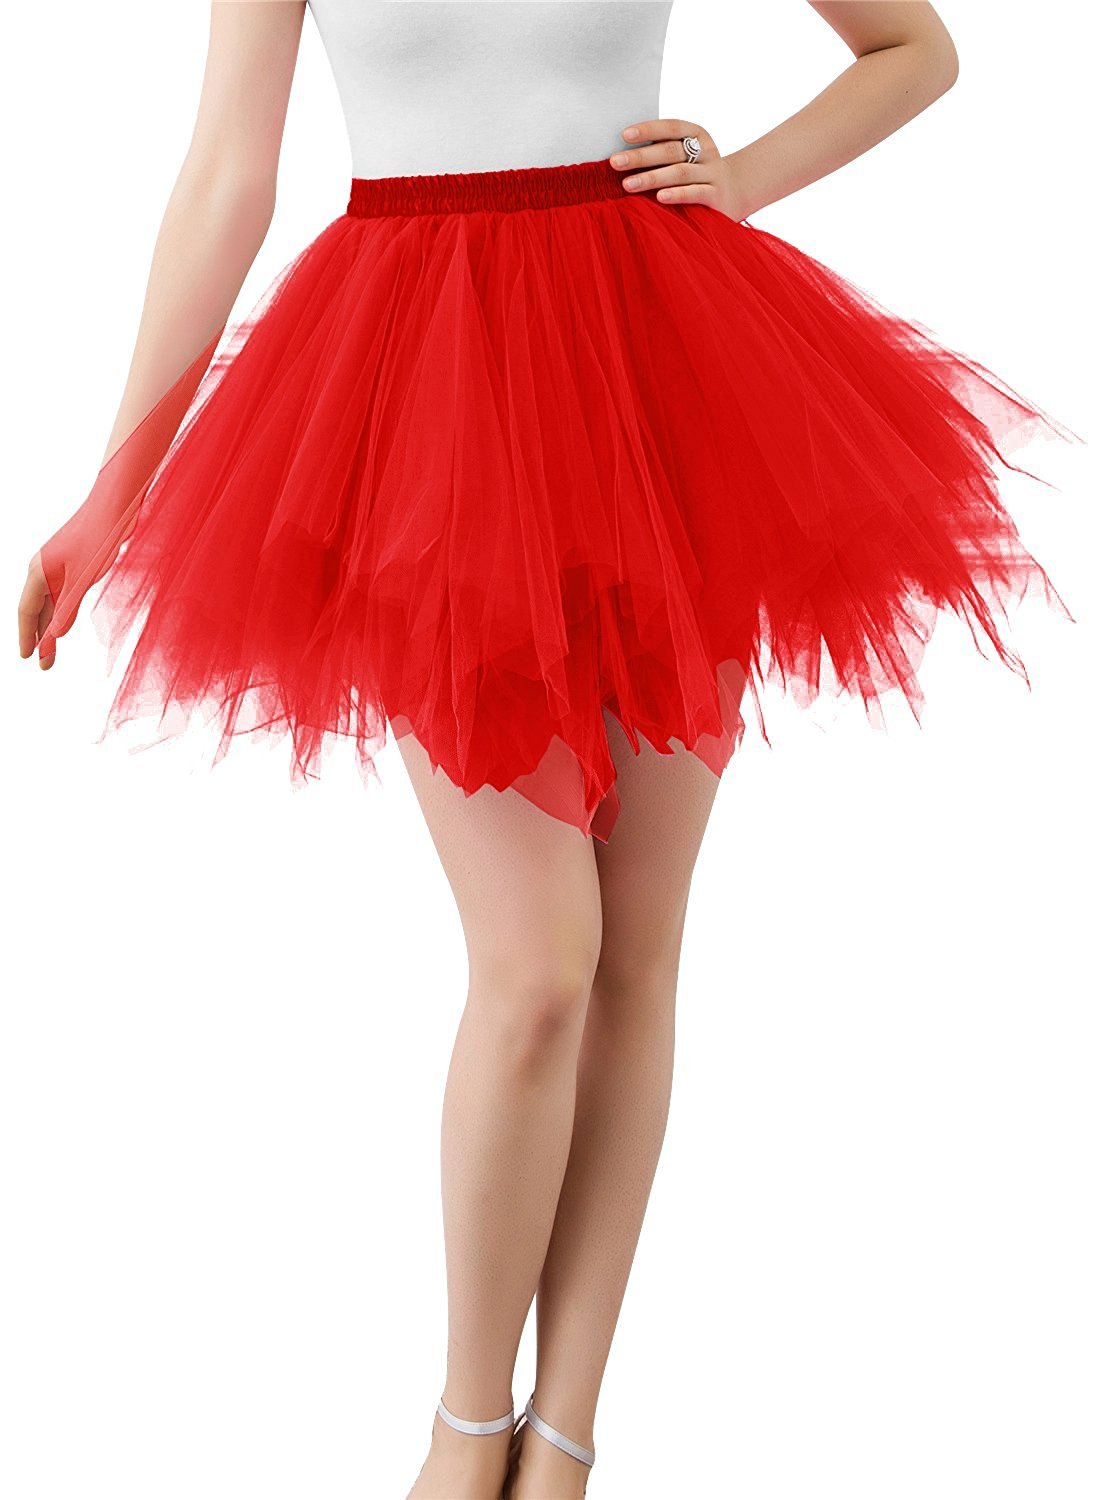 Karneval Erwachsene Damen 80's Tüllrock Tütü Röcke Tüll Petticoat Tutu Rot